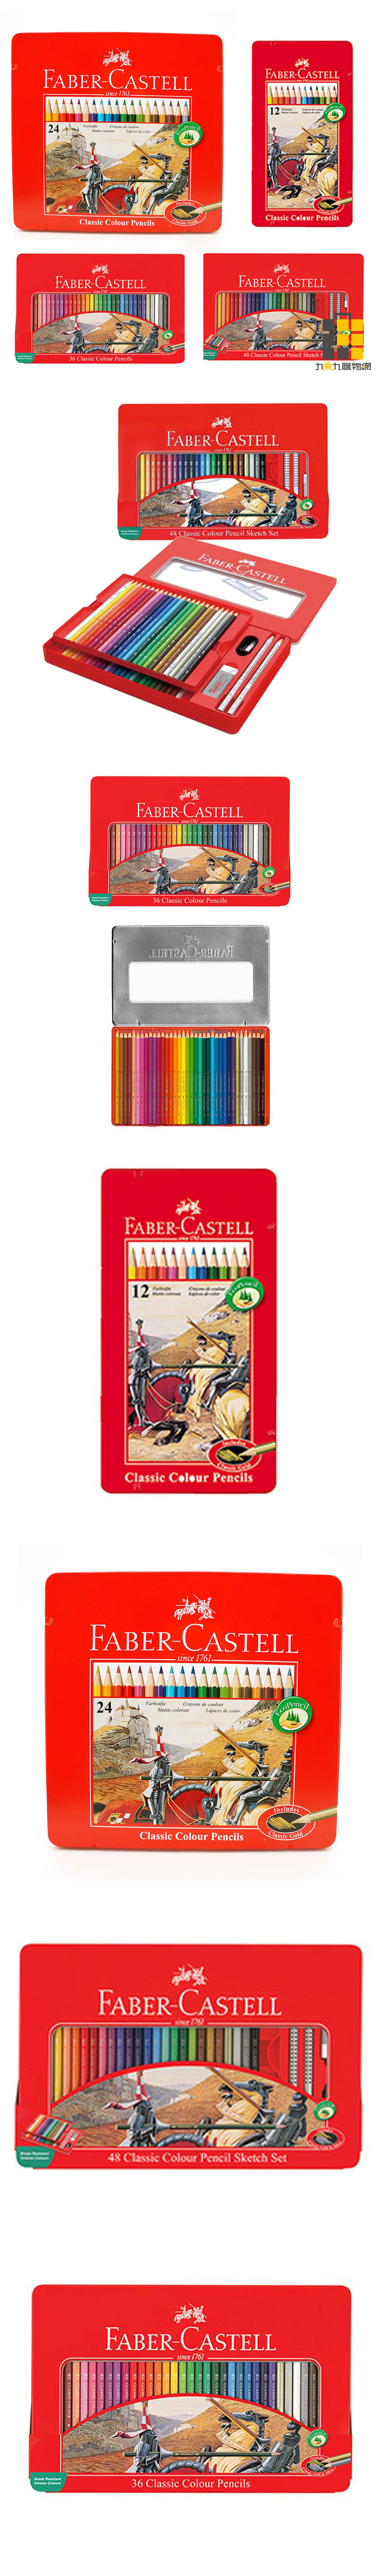 油性 色鉛筆 輝柏 色鉛筆 faber-castell 色鉛筆